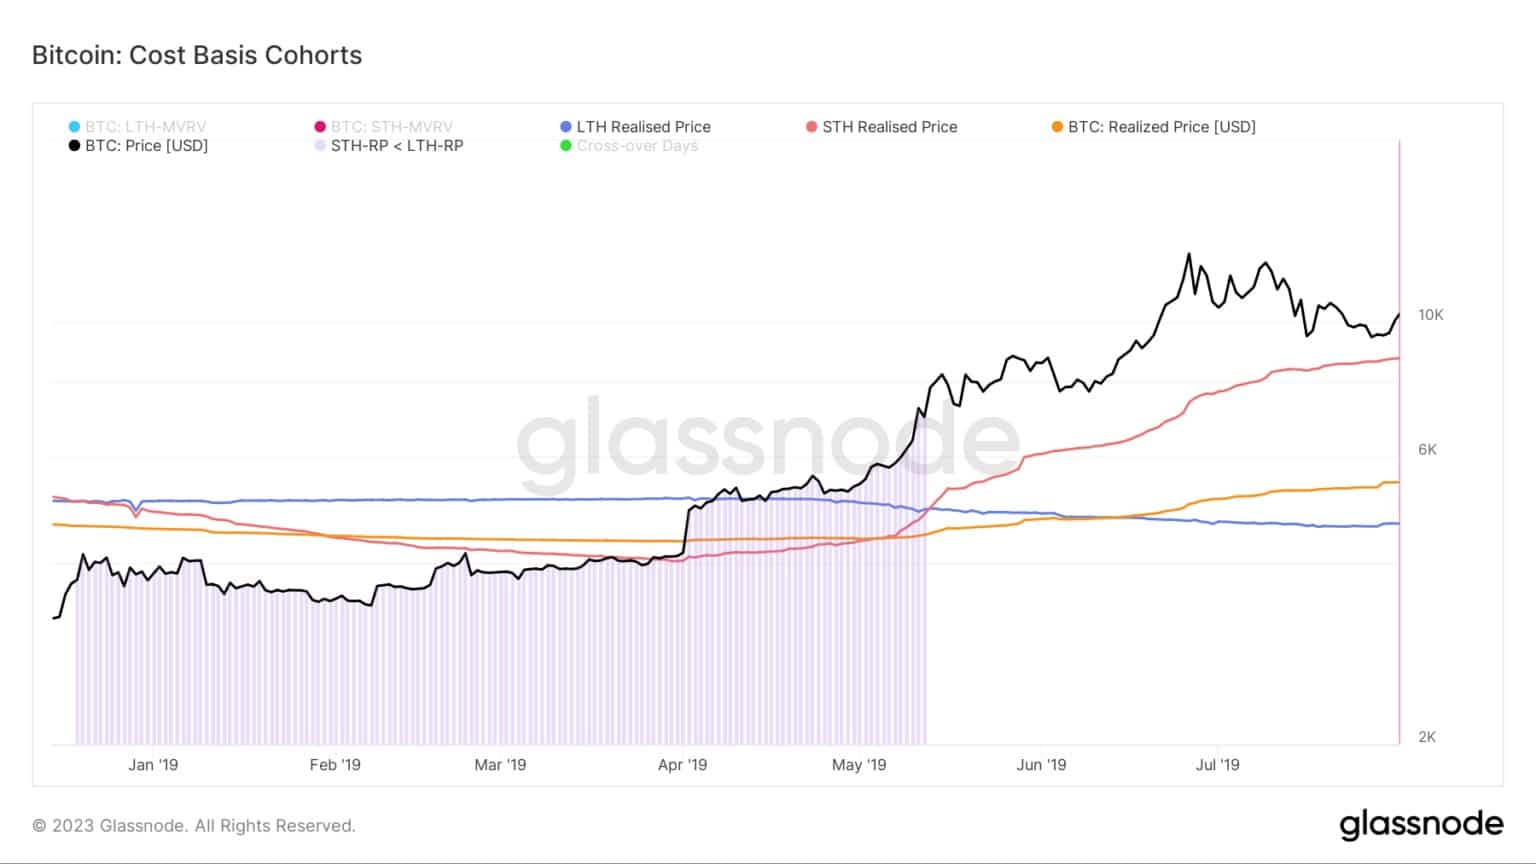 Graphique montrant le coût de base pour les cohortes Bitcoin pendant le marché baissier 2018/2019 (Source : Glassnode)